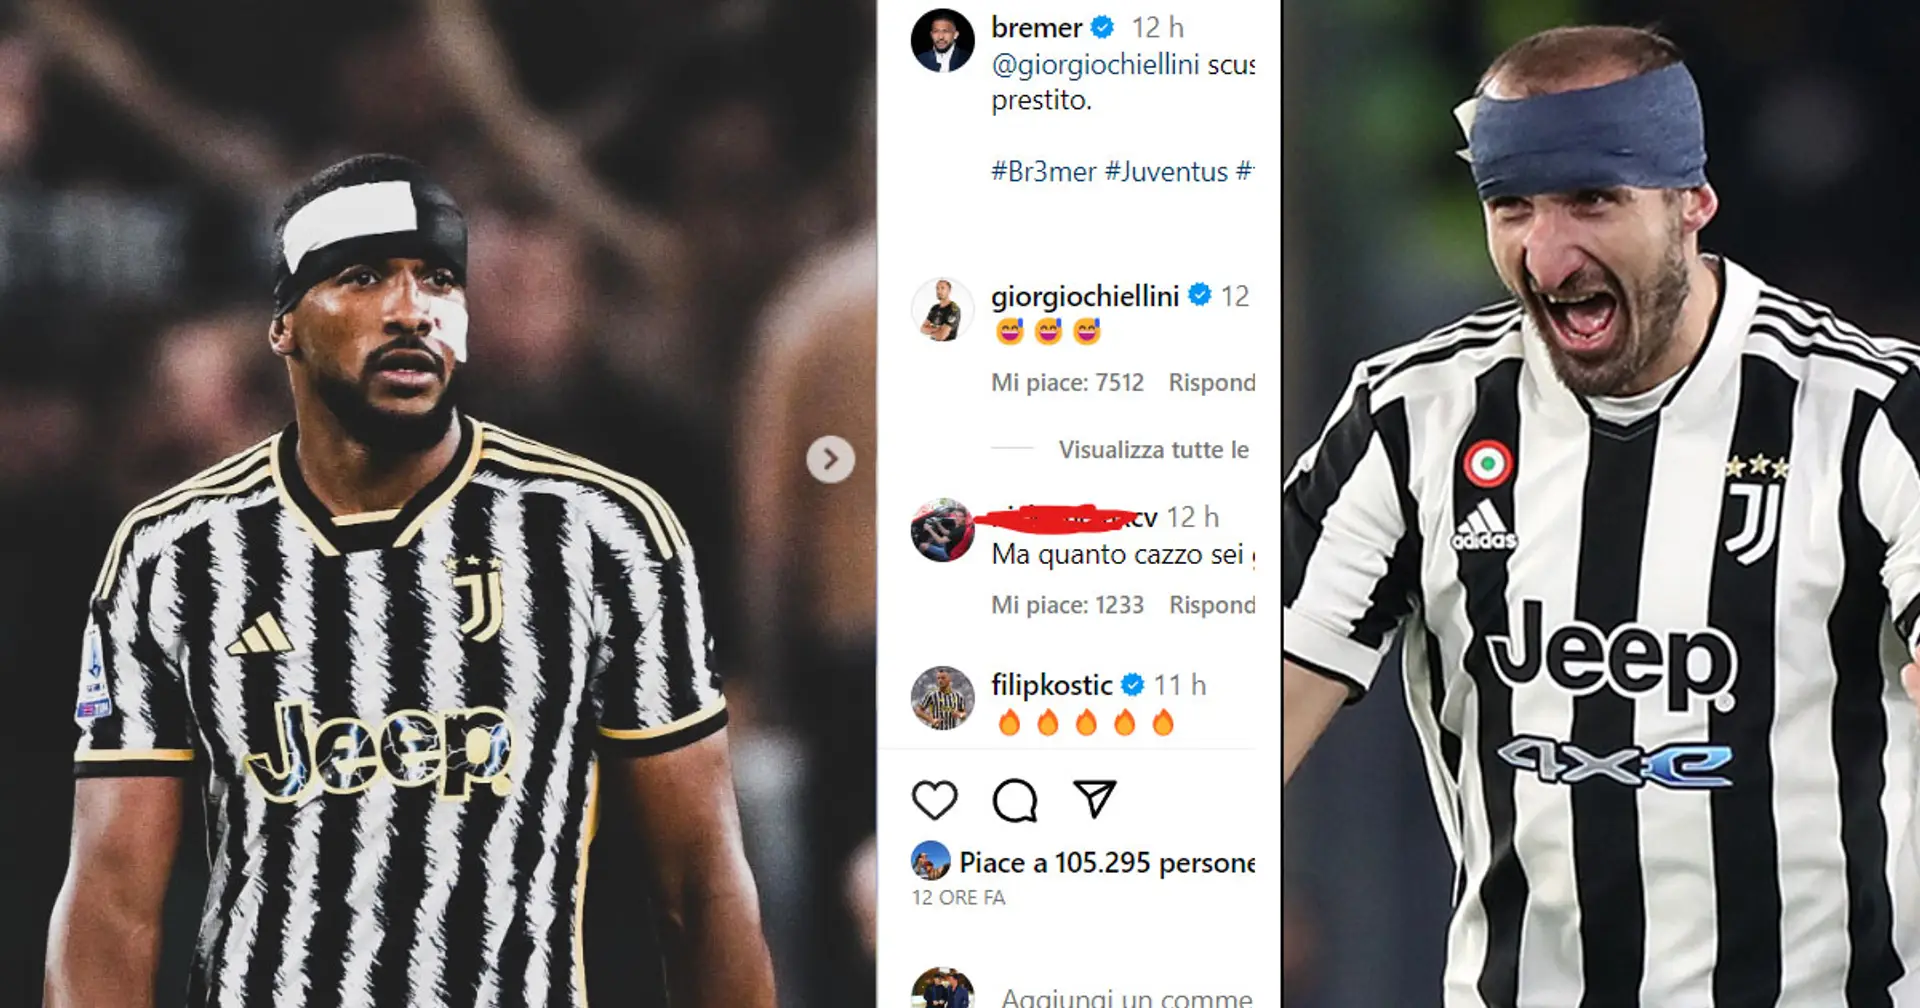 "L'ho preso in prestito": Bremer si scusa con Chiellini dopo Juventus-Torino, il post sui social è esilarante